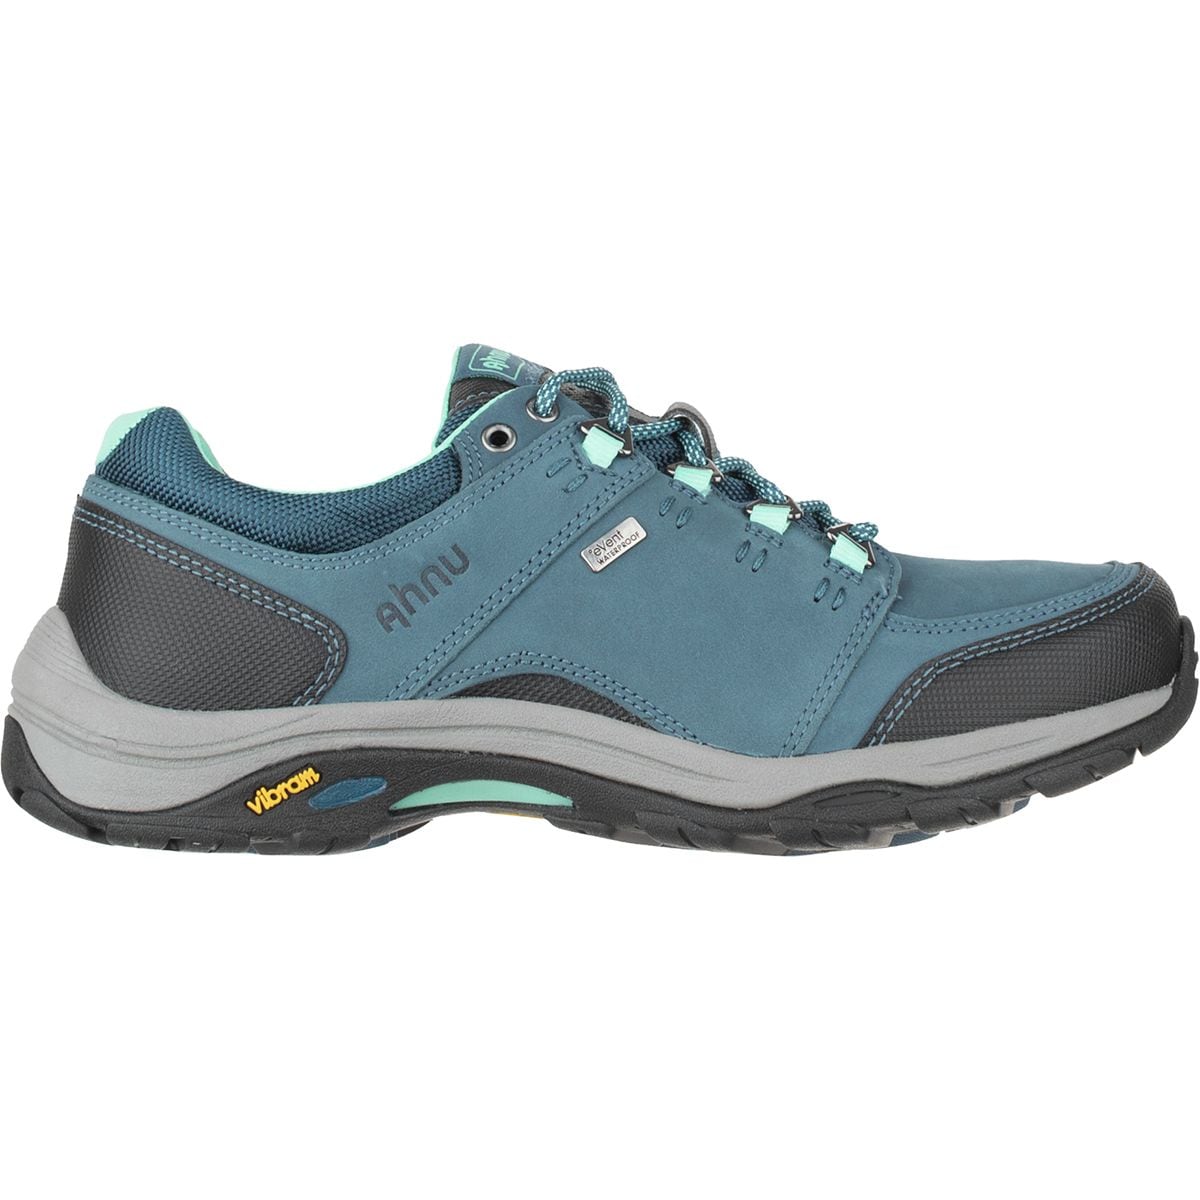 Ahnu Montara III eVent Waterproof Hiking Shoe - Women's - Footwear